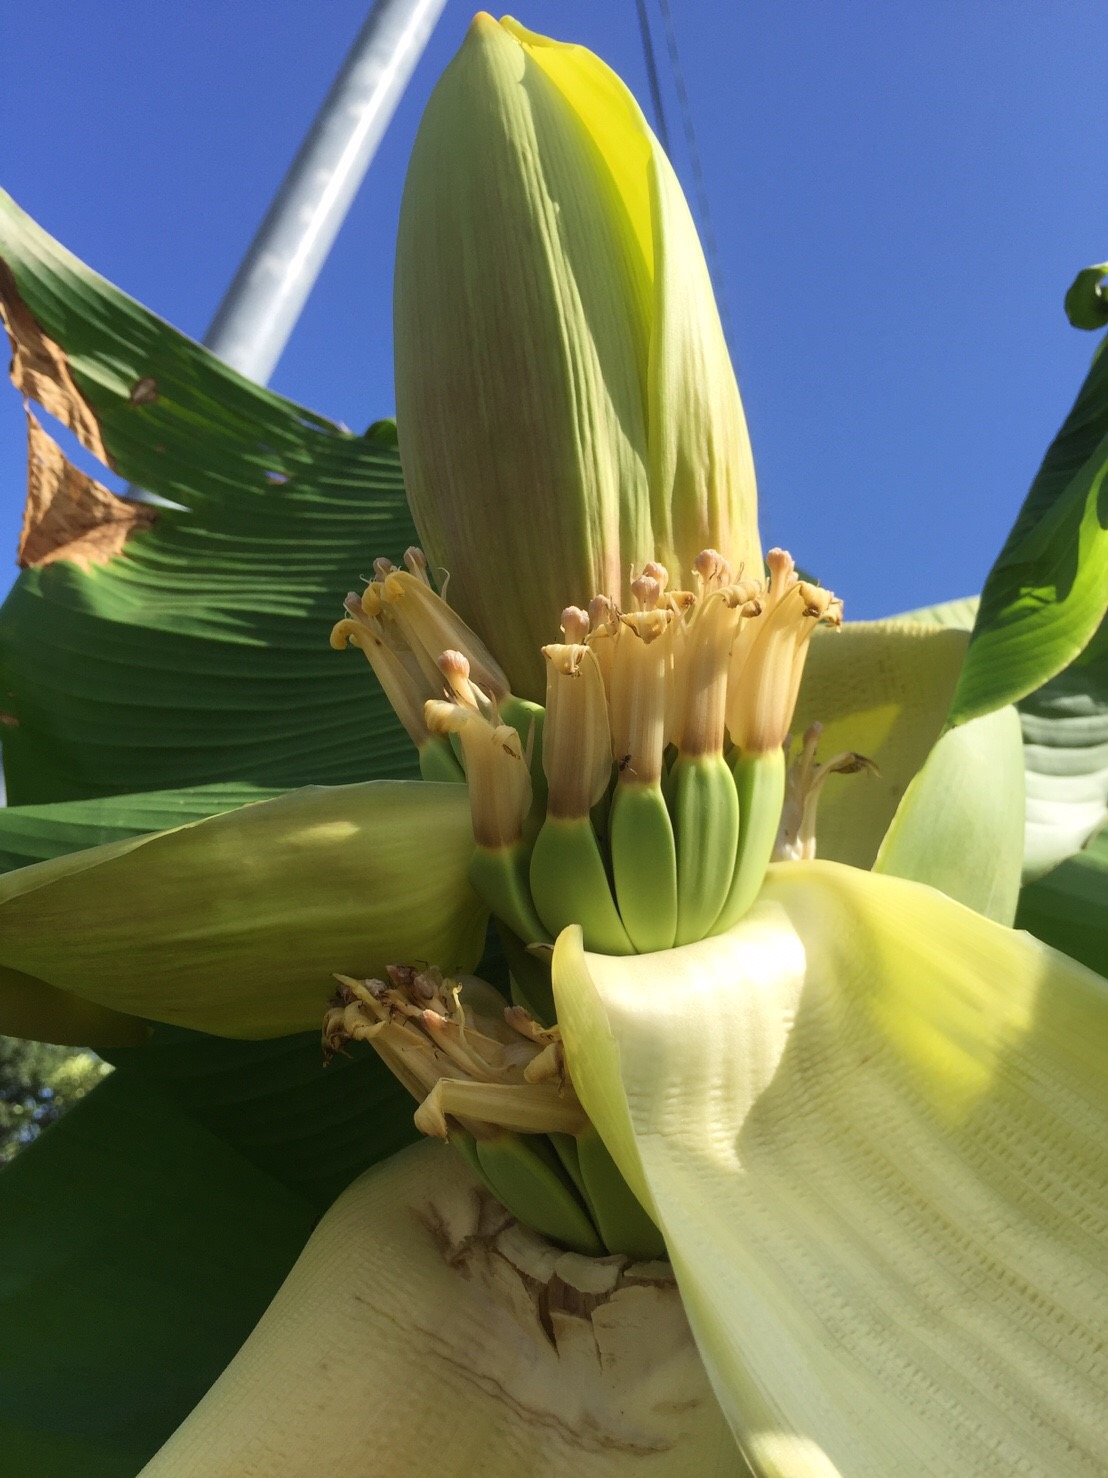 通常は亜熱帯地方でしか育たないバナナですが、愛知県で成長し、実を付けました。